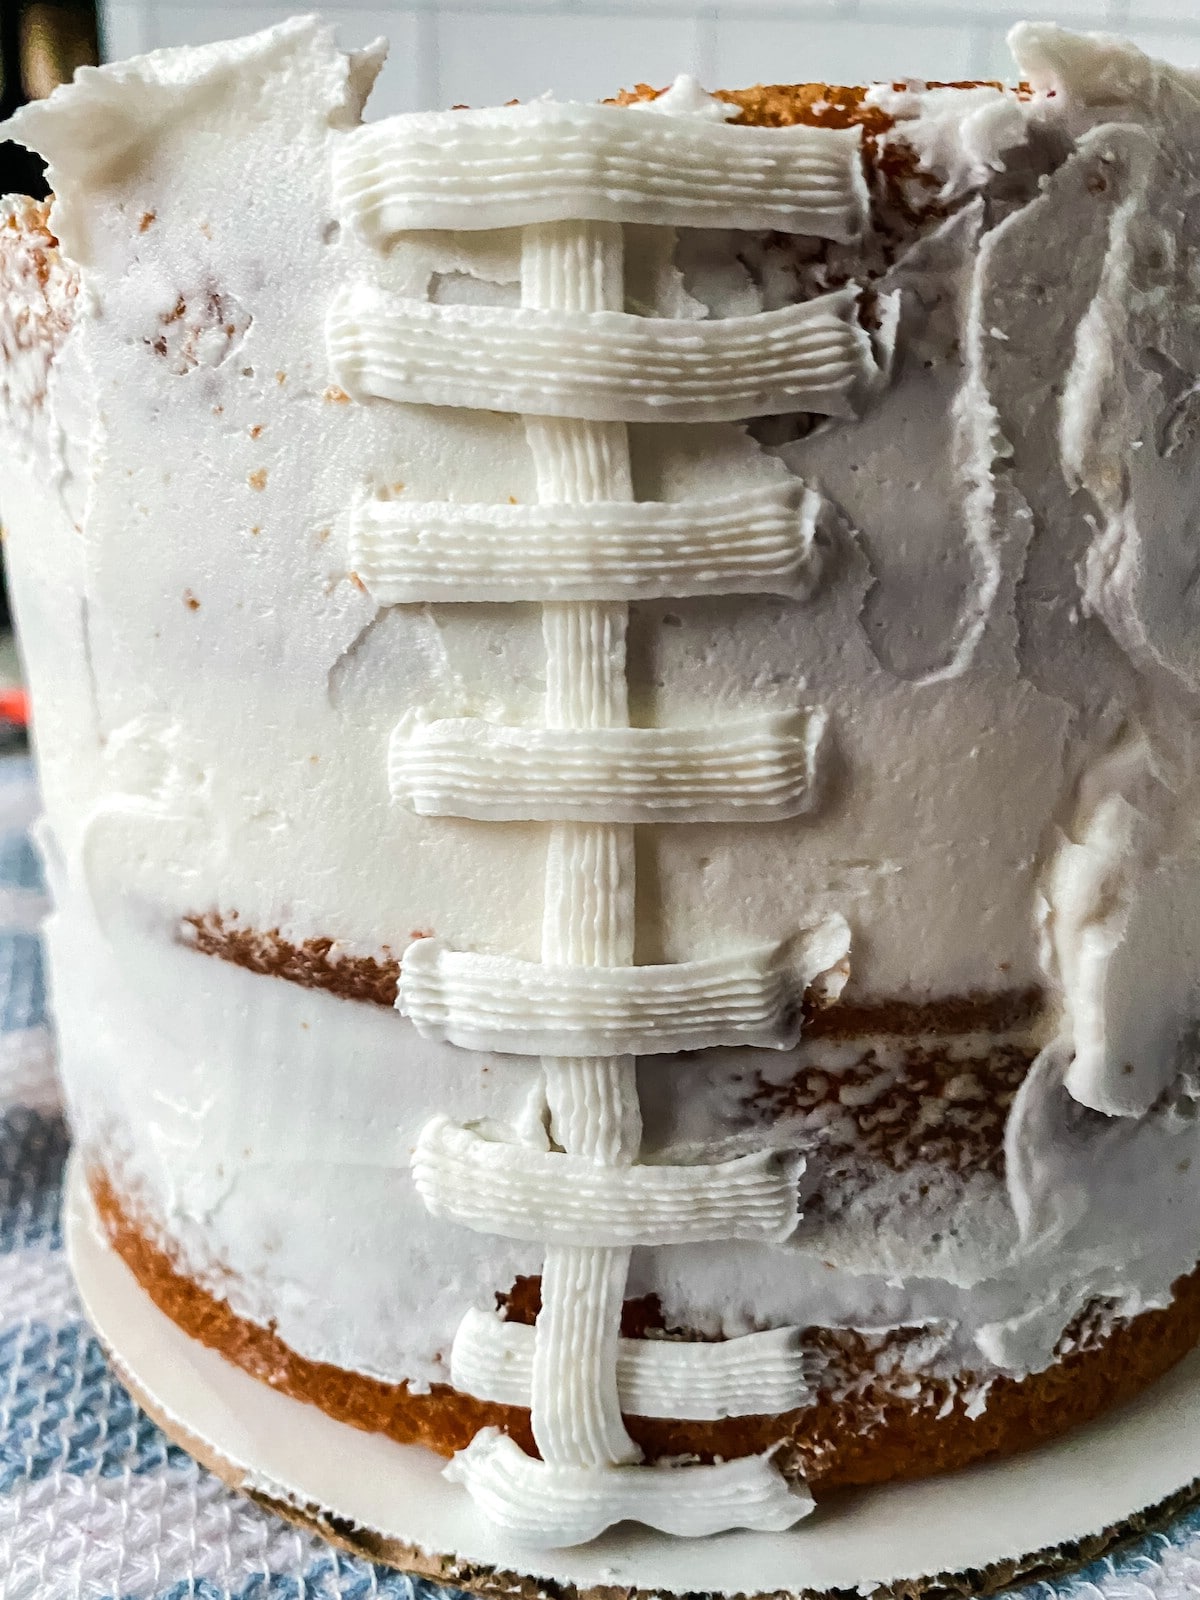 Adding horizontal stripes onto layer cake